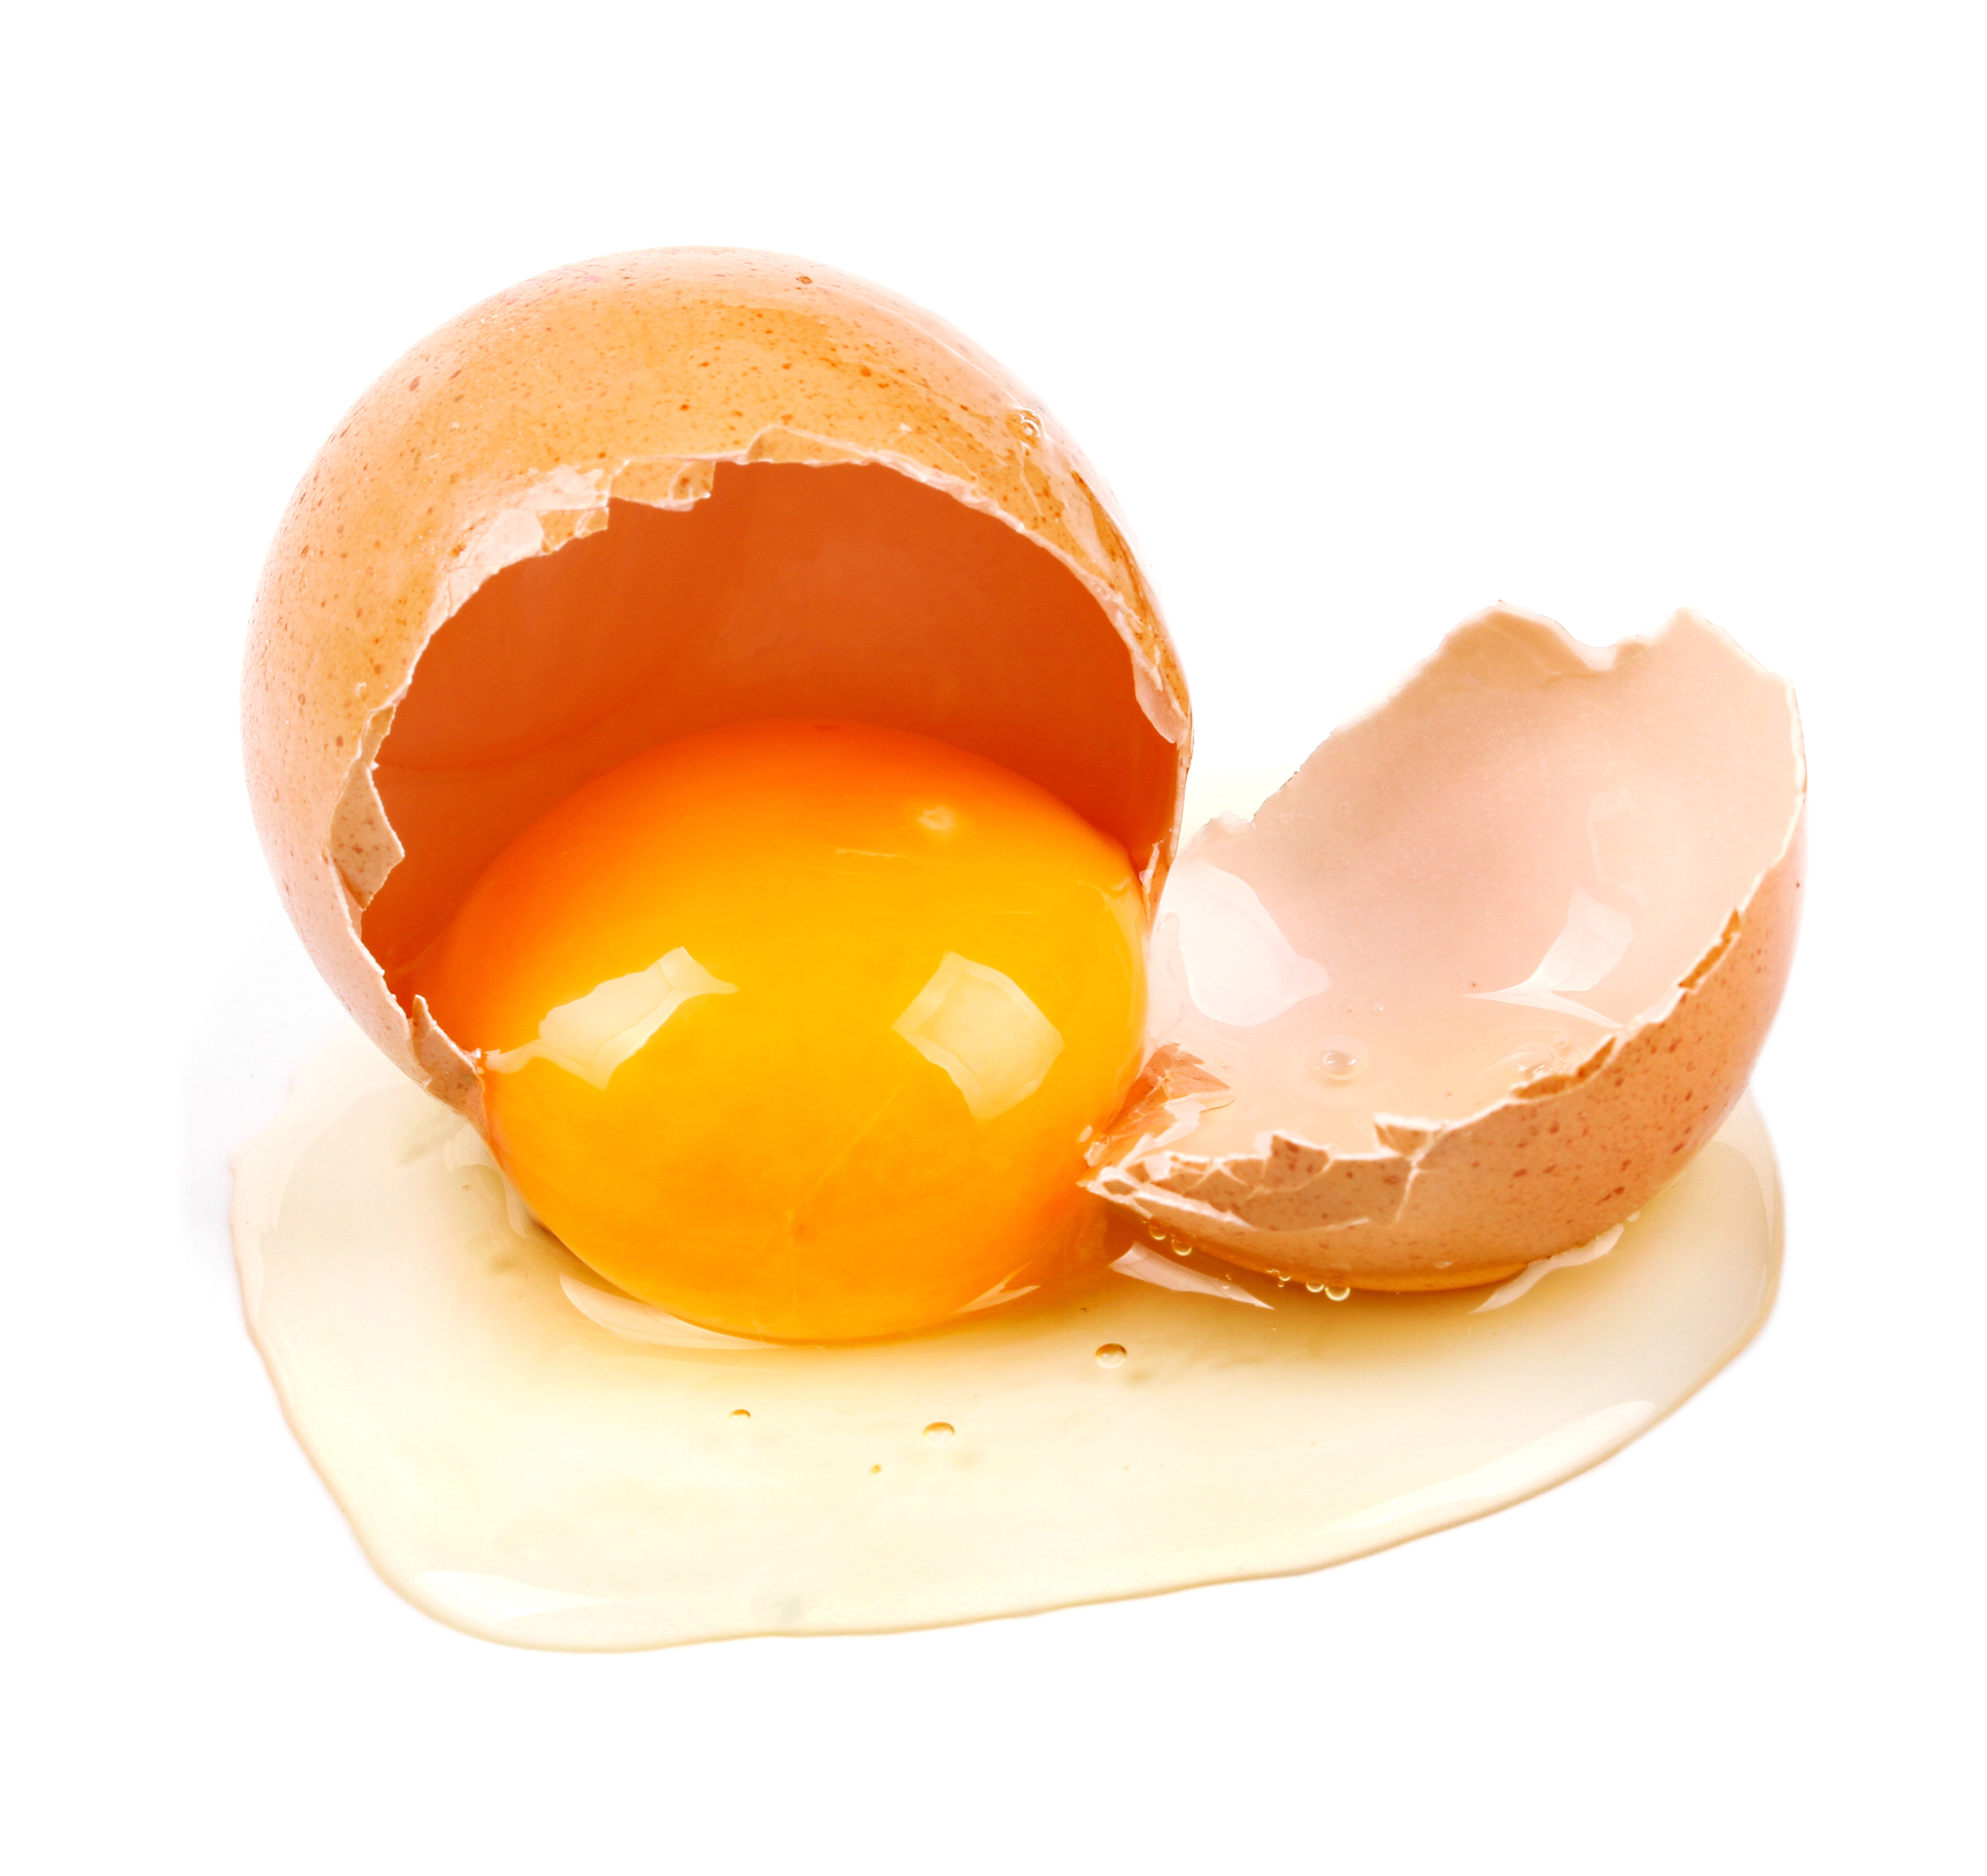 Los alimentos se encarecen cada día: alza del huevo en un 16%